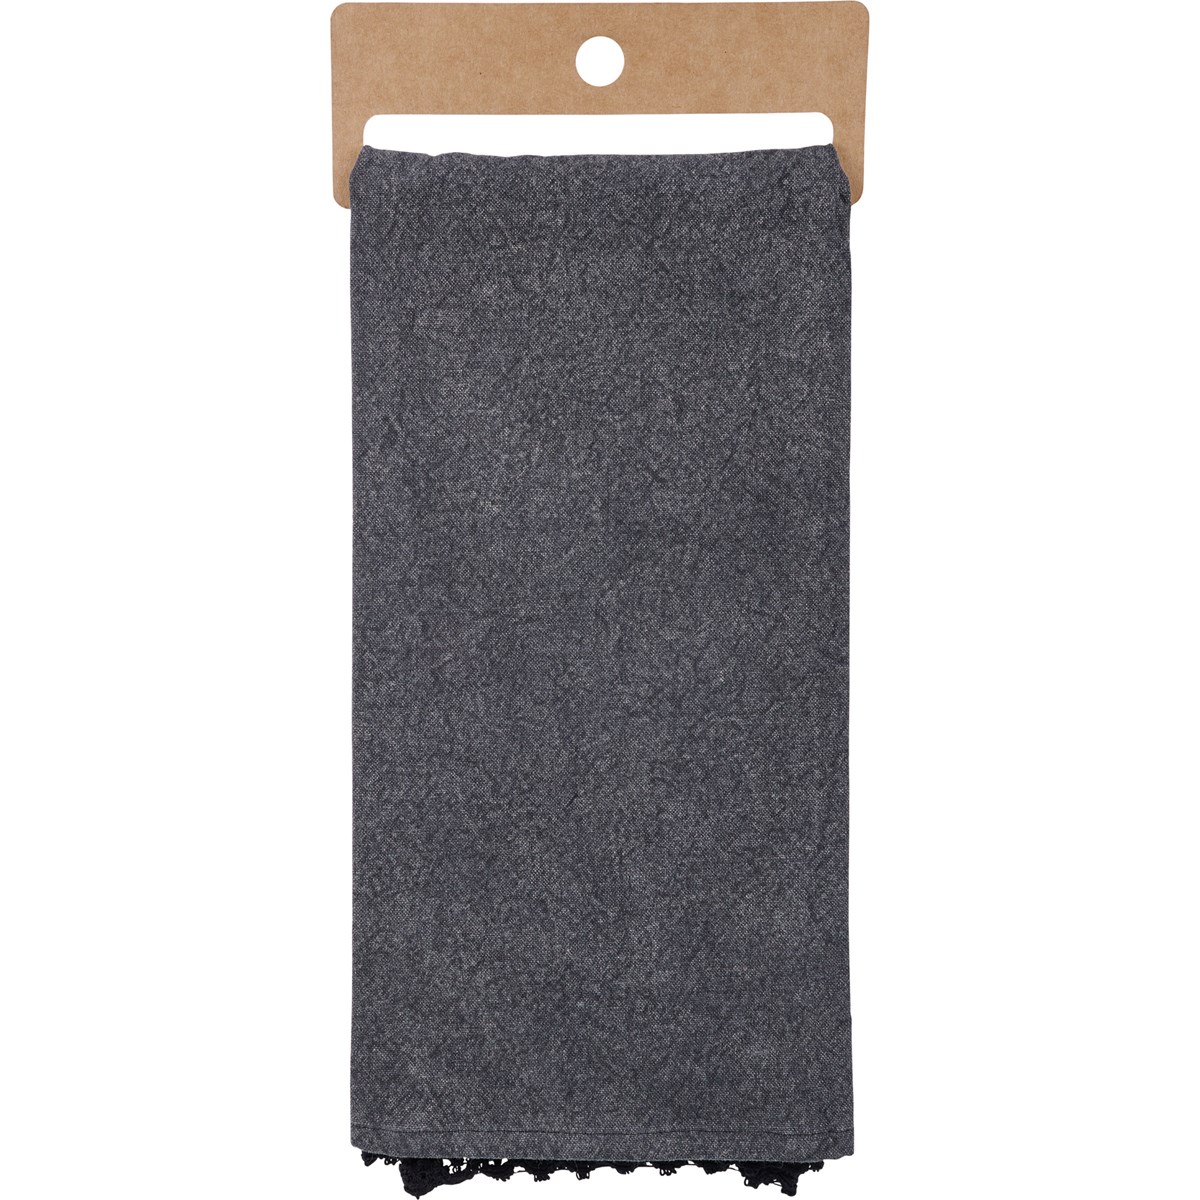 Black Cat Kitchen Towel - Cotton, Lace